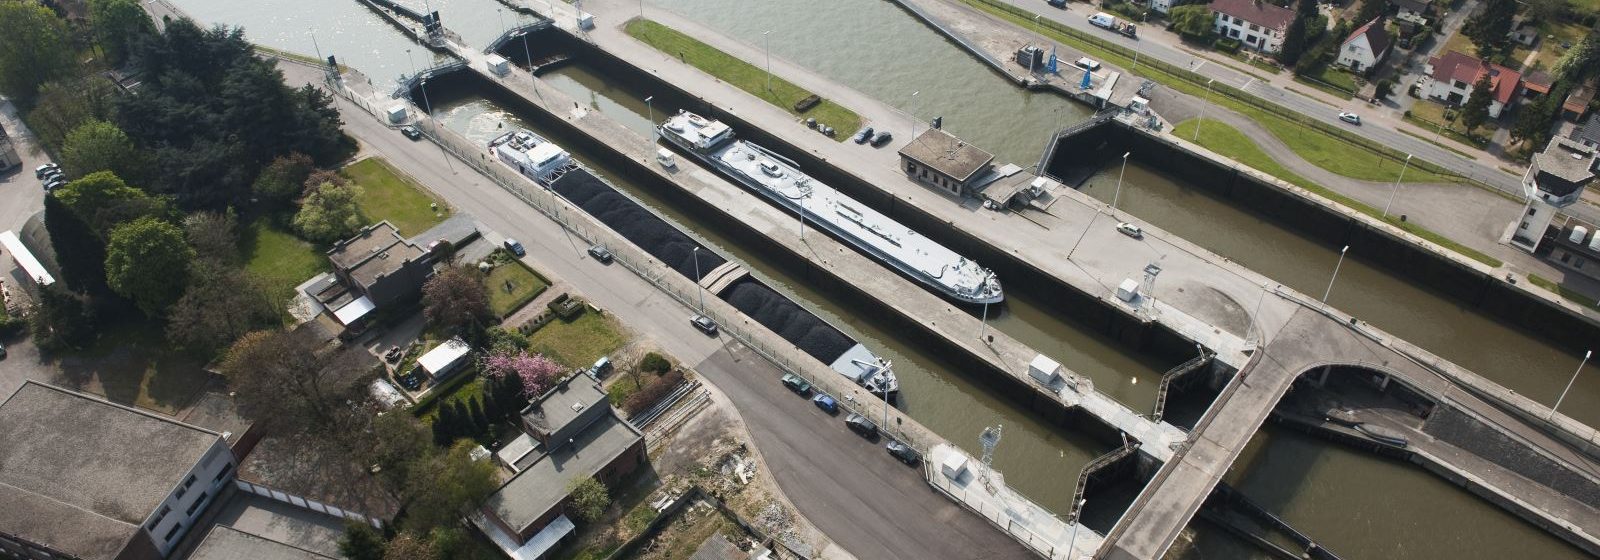 Albertkanaal - brug sluis Wijnegem